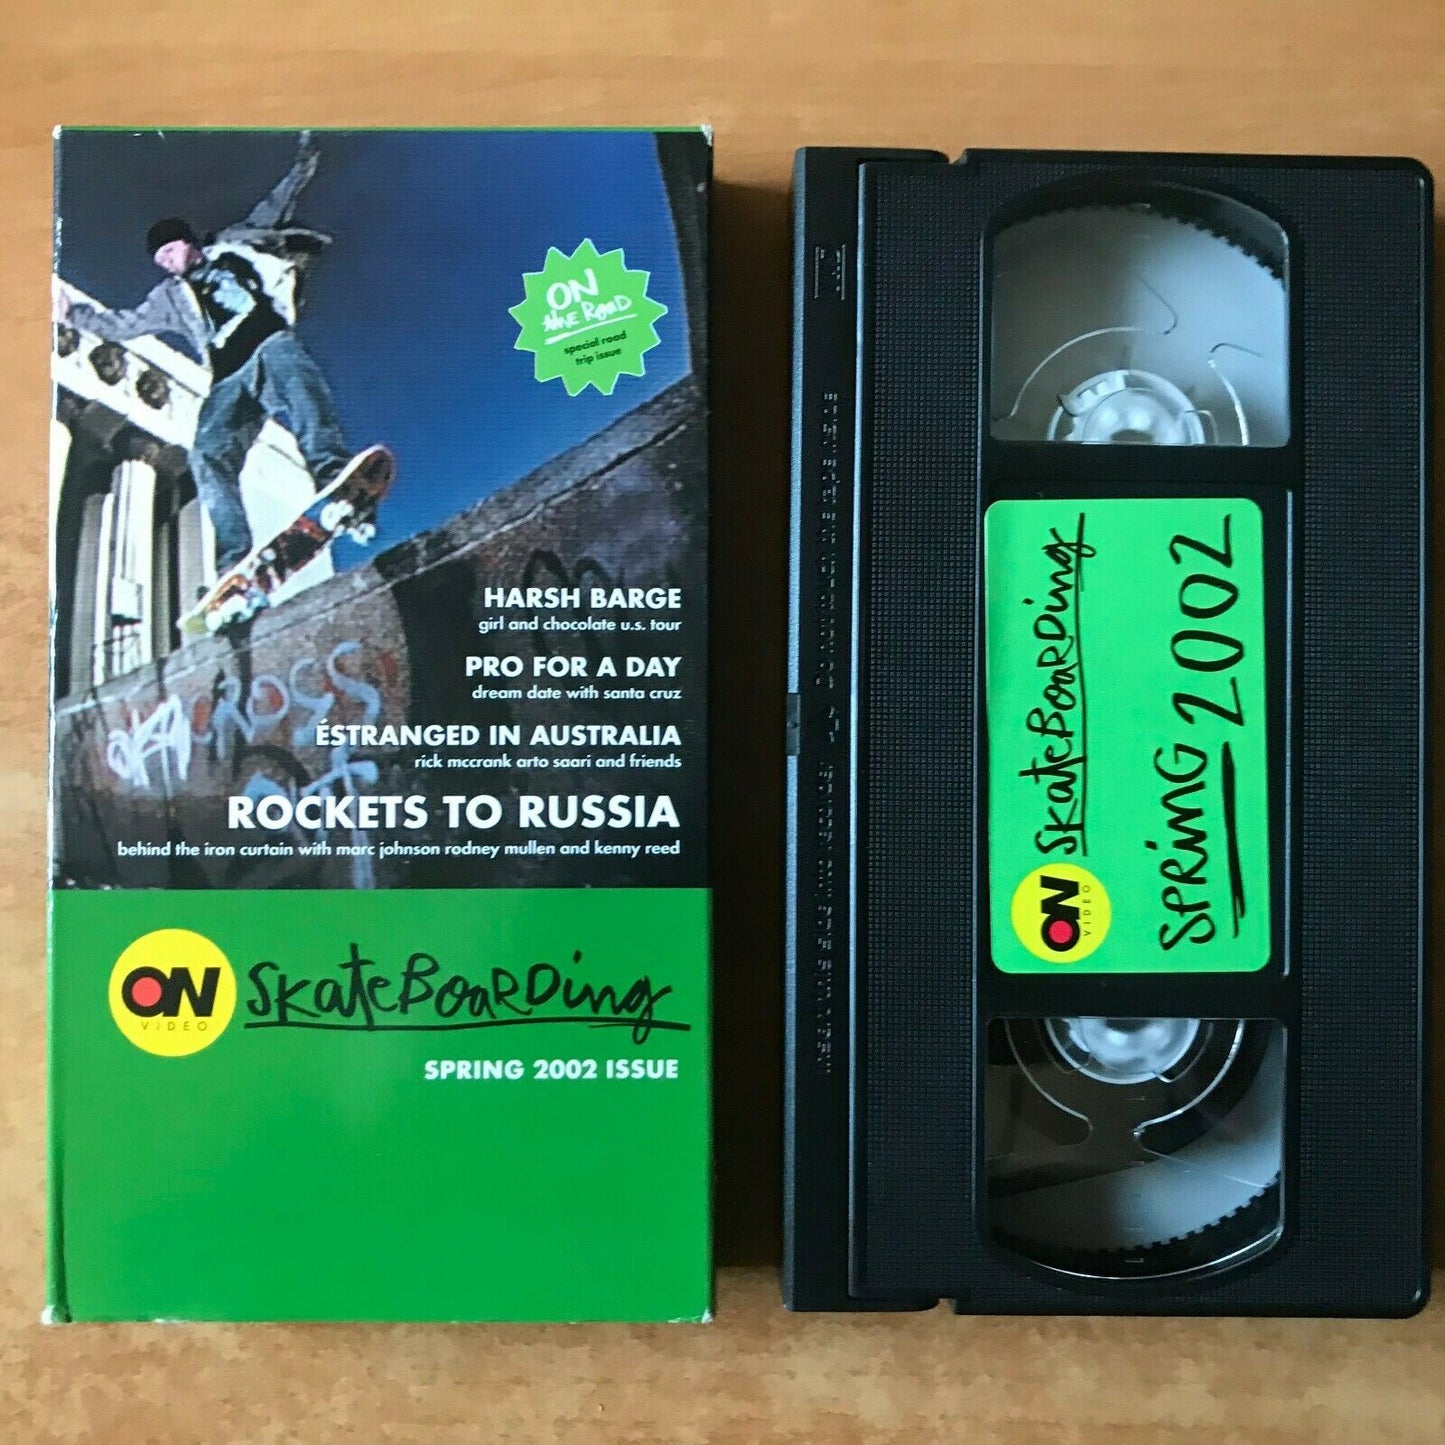 Skateboarding: Spring 2002 Issue; [Carton Box] Australia - Rodney Mullen - VHS-